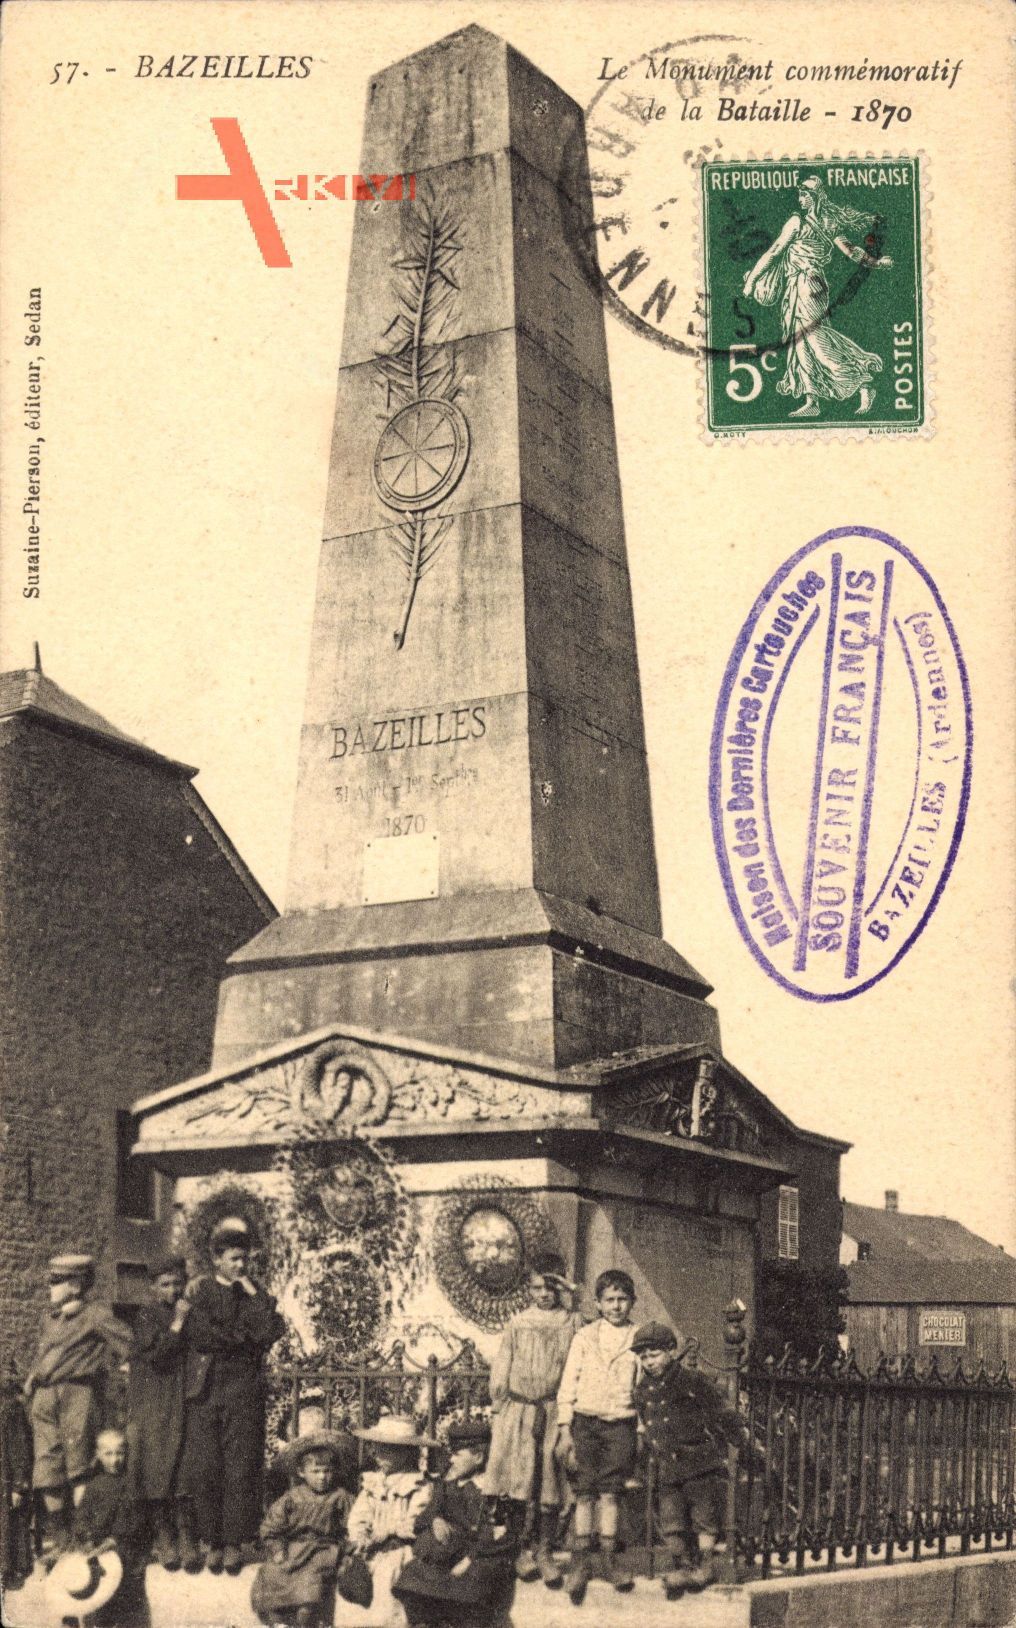 Bazeilles Ardennes, Le Monument commémoratif de la Bataille 1870